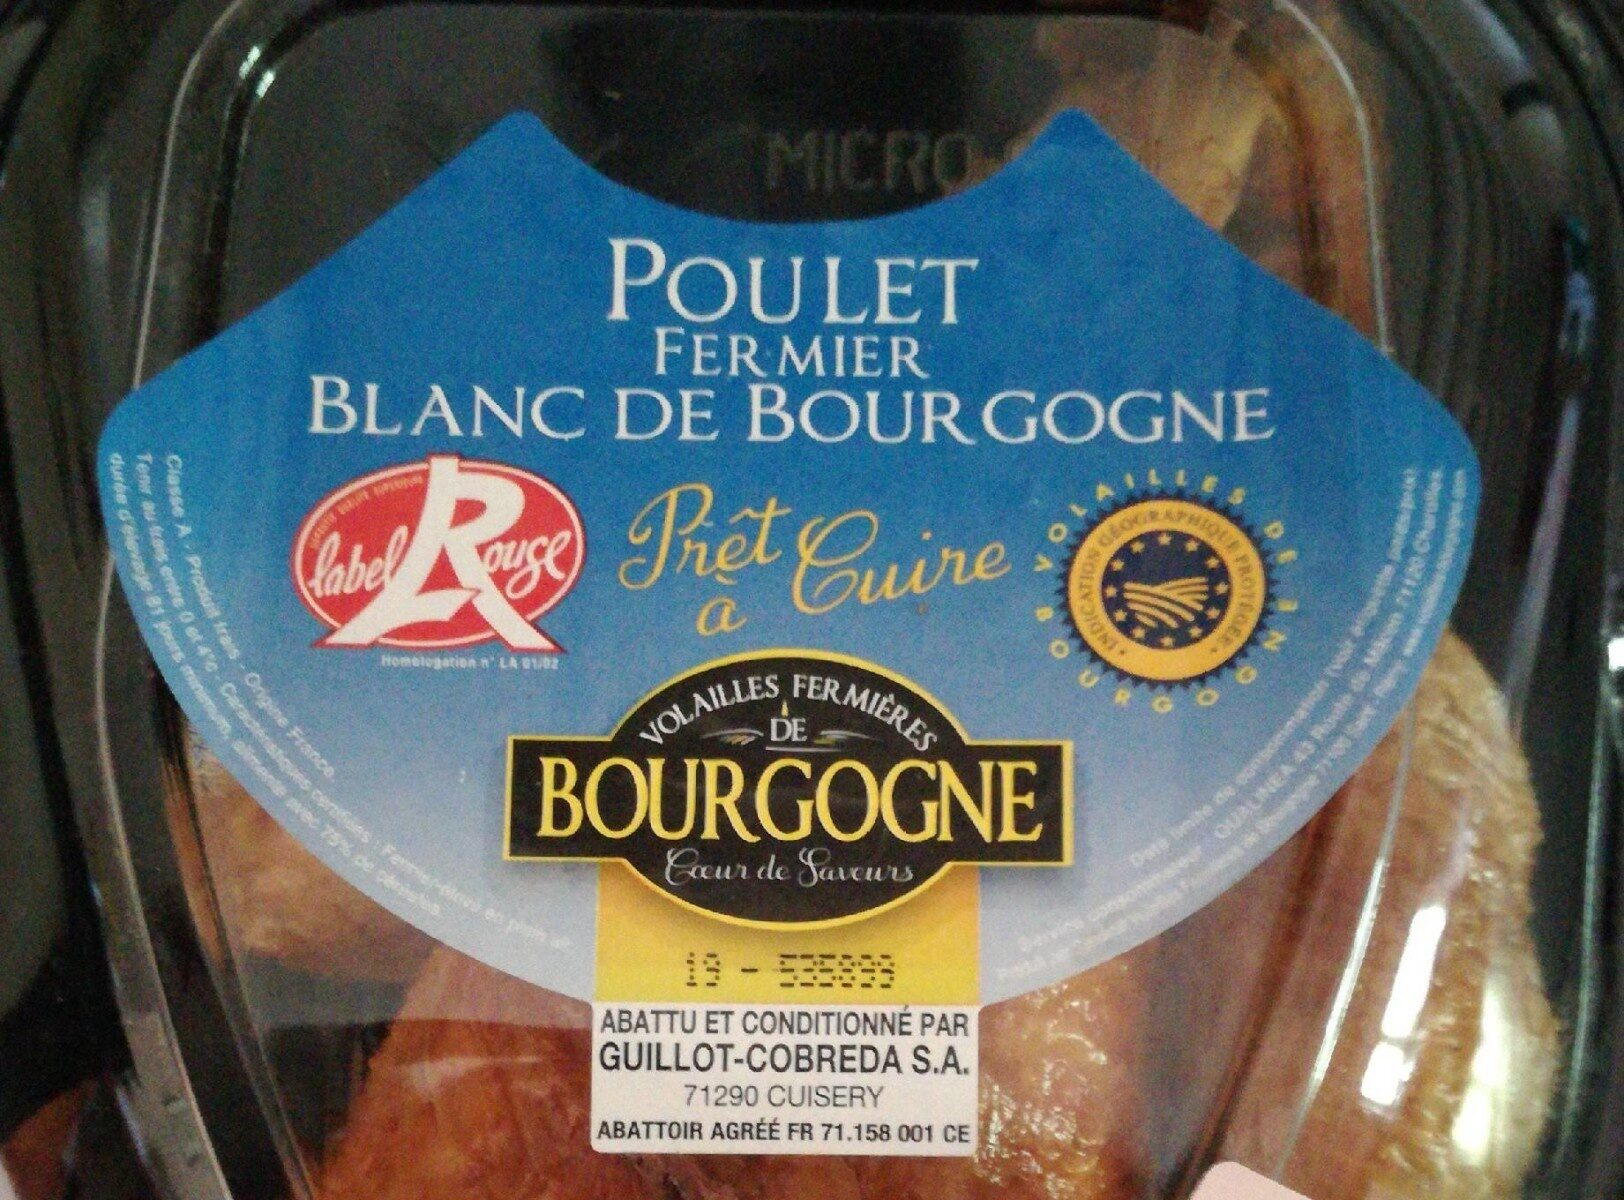 Poulet fermier blanc de Bourgogne - Product - fr